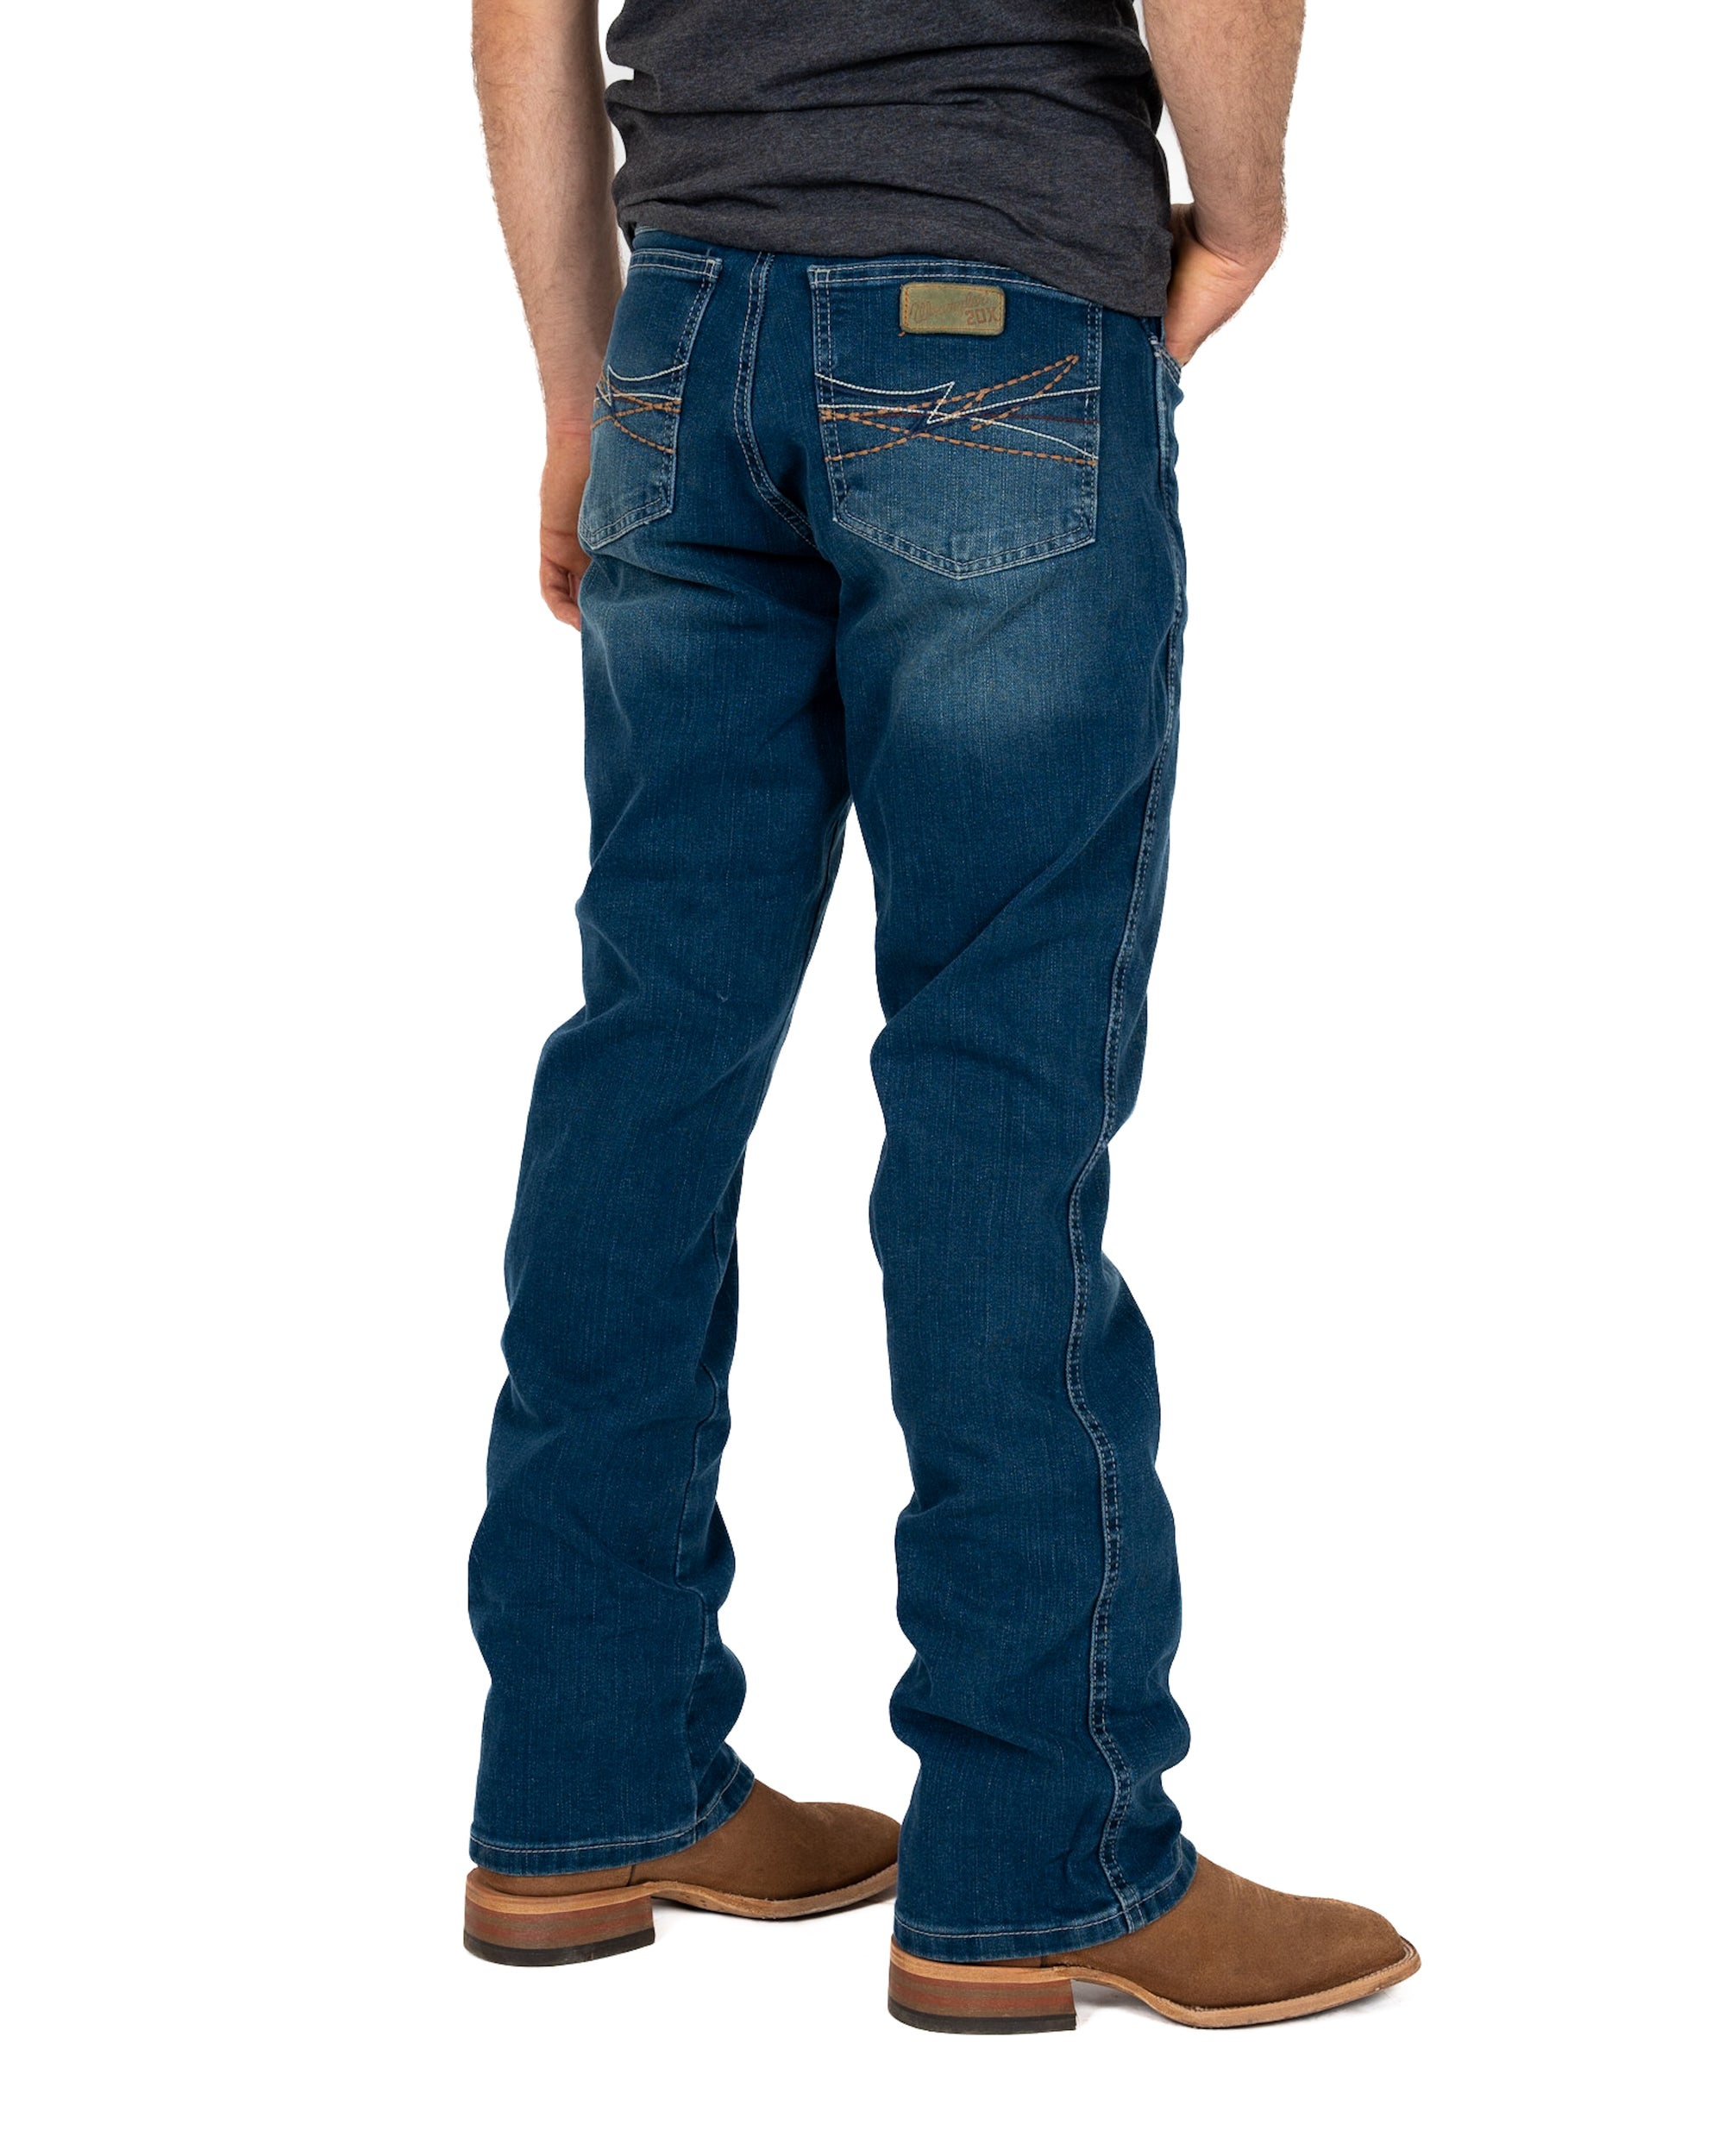 Jeans Wrangler Slim Boot 20X Caballero